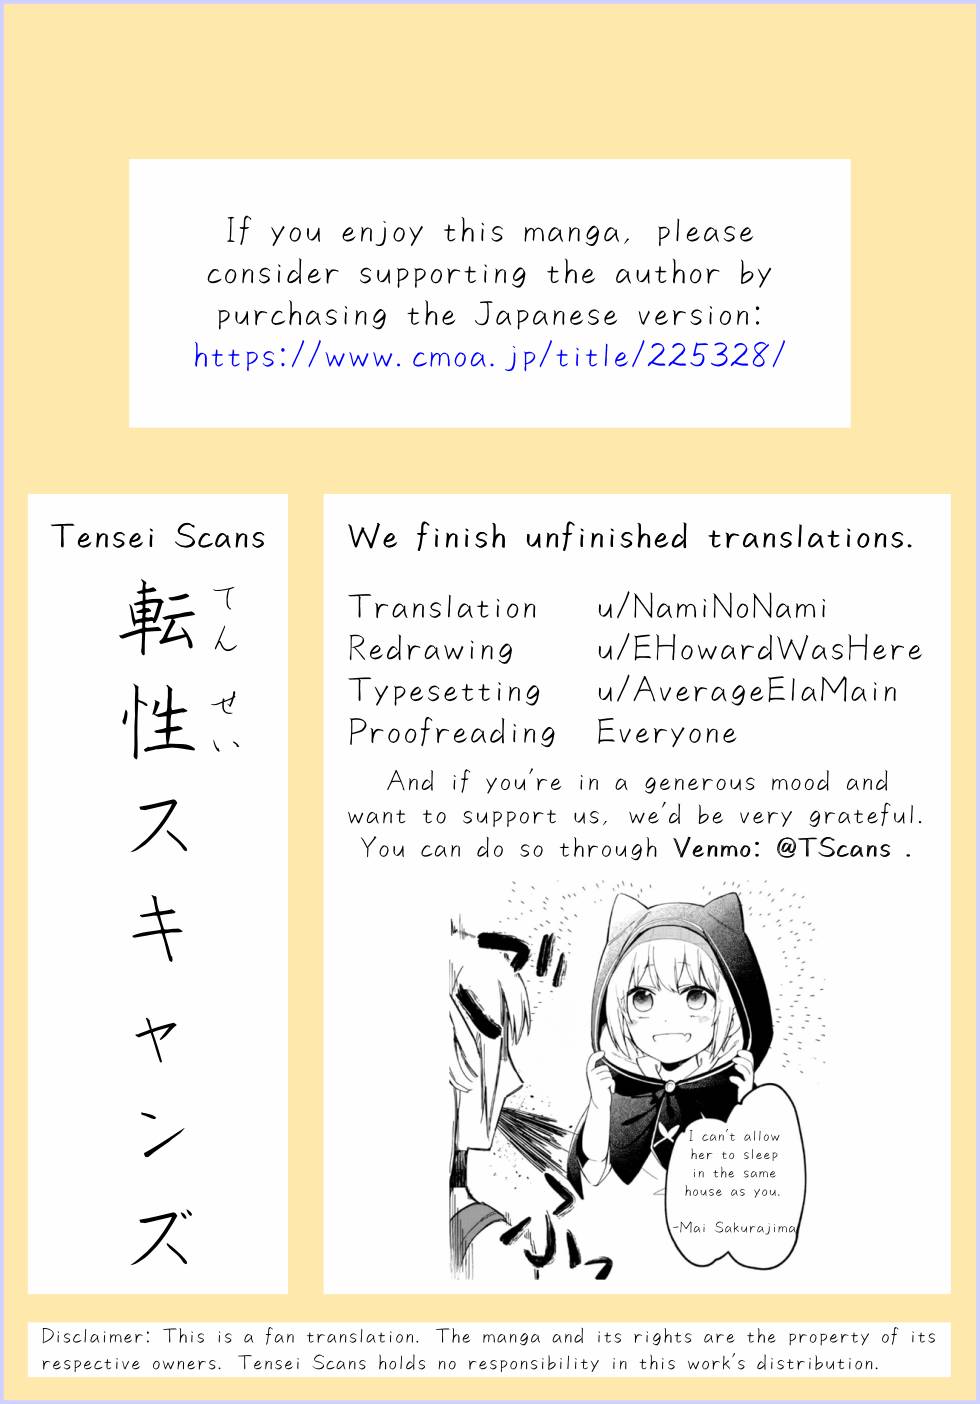 Read Getsuyoubi no Tawawa Manga English [All Chapters] Online Free -  MangaKomi